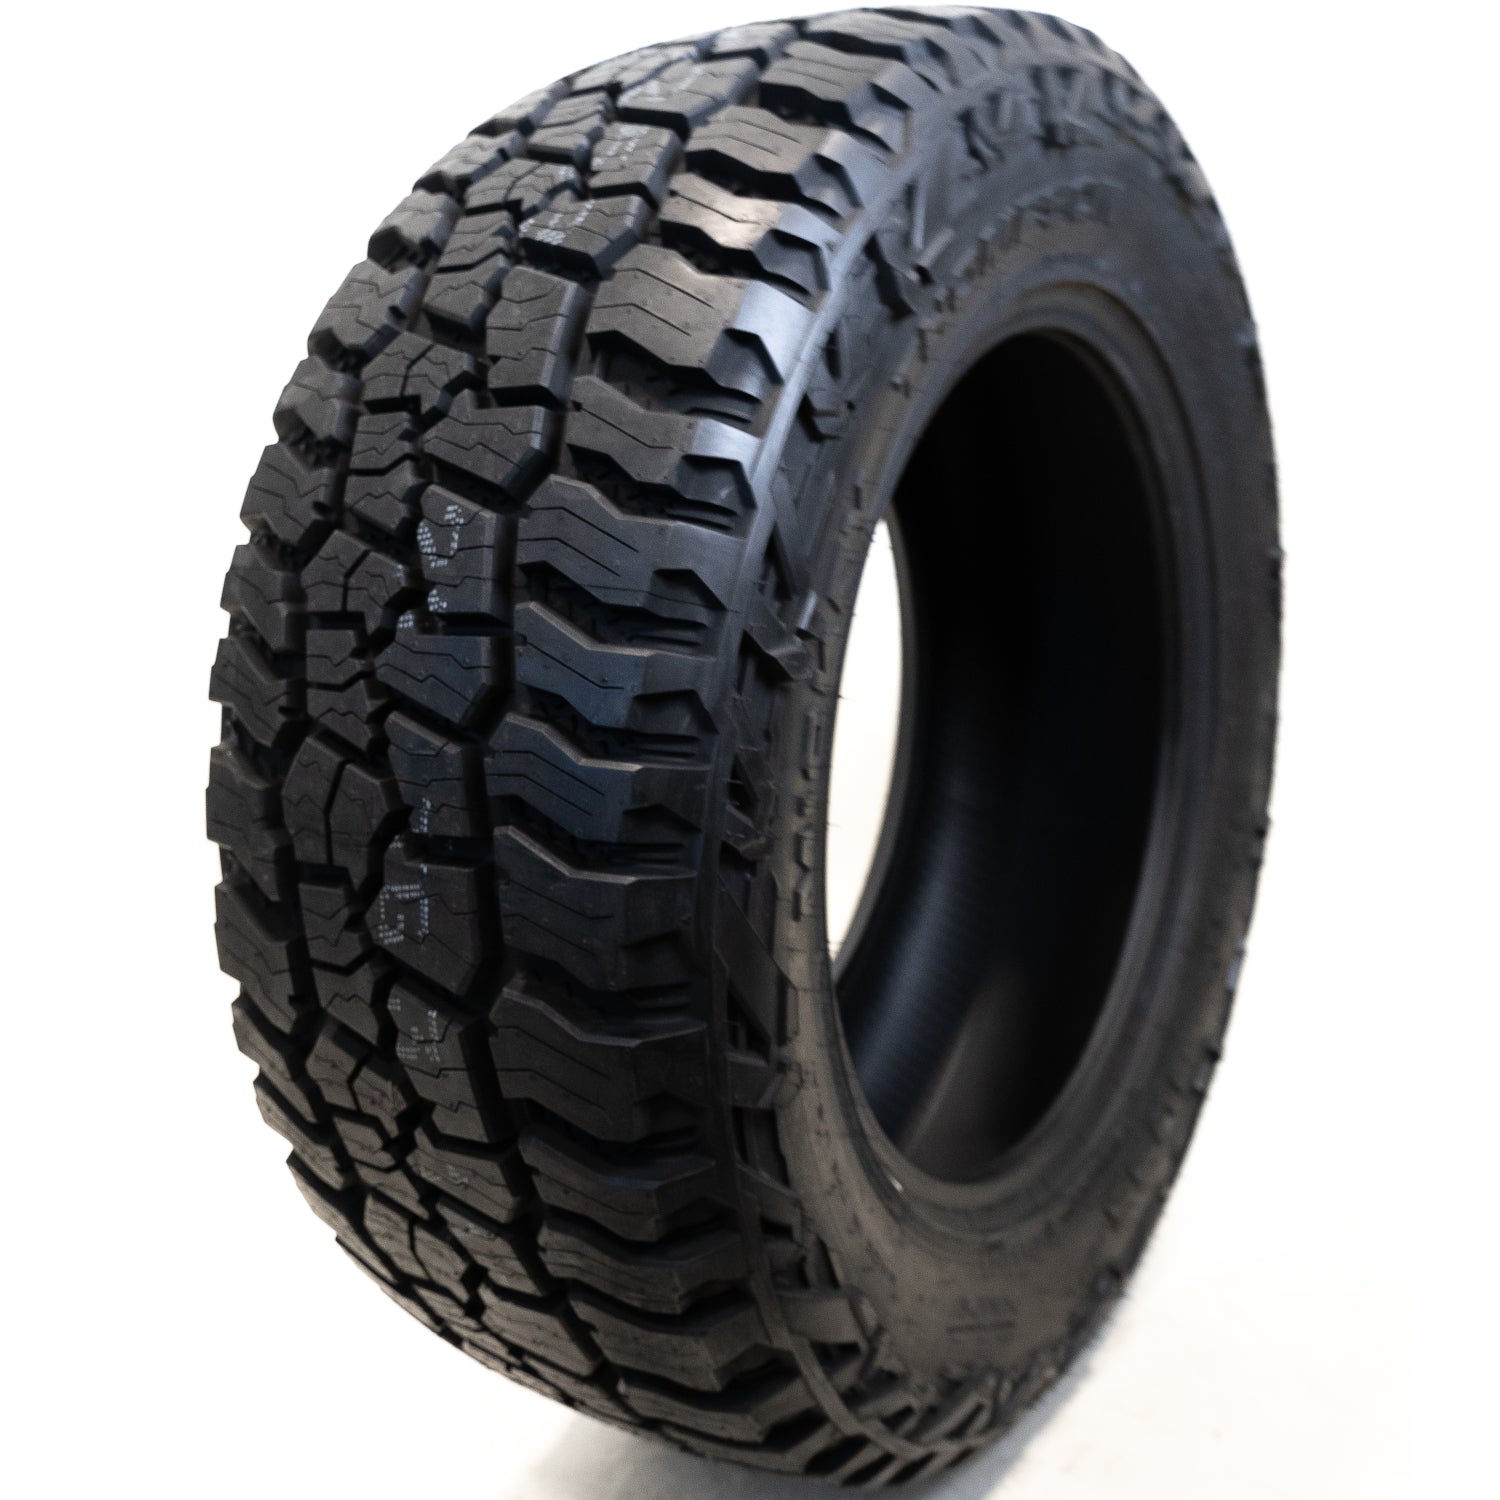 MICKEY THOMPSON BAJA BOSS A/T LT285/65R20 (34.6X11.2R 20) Tires